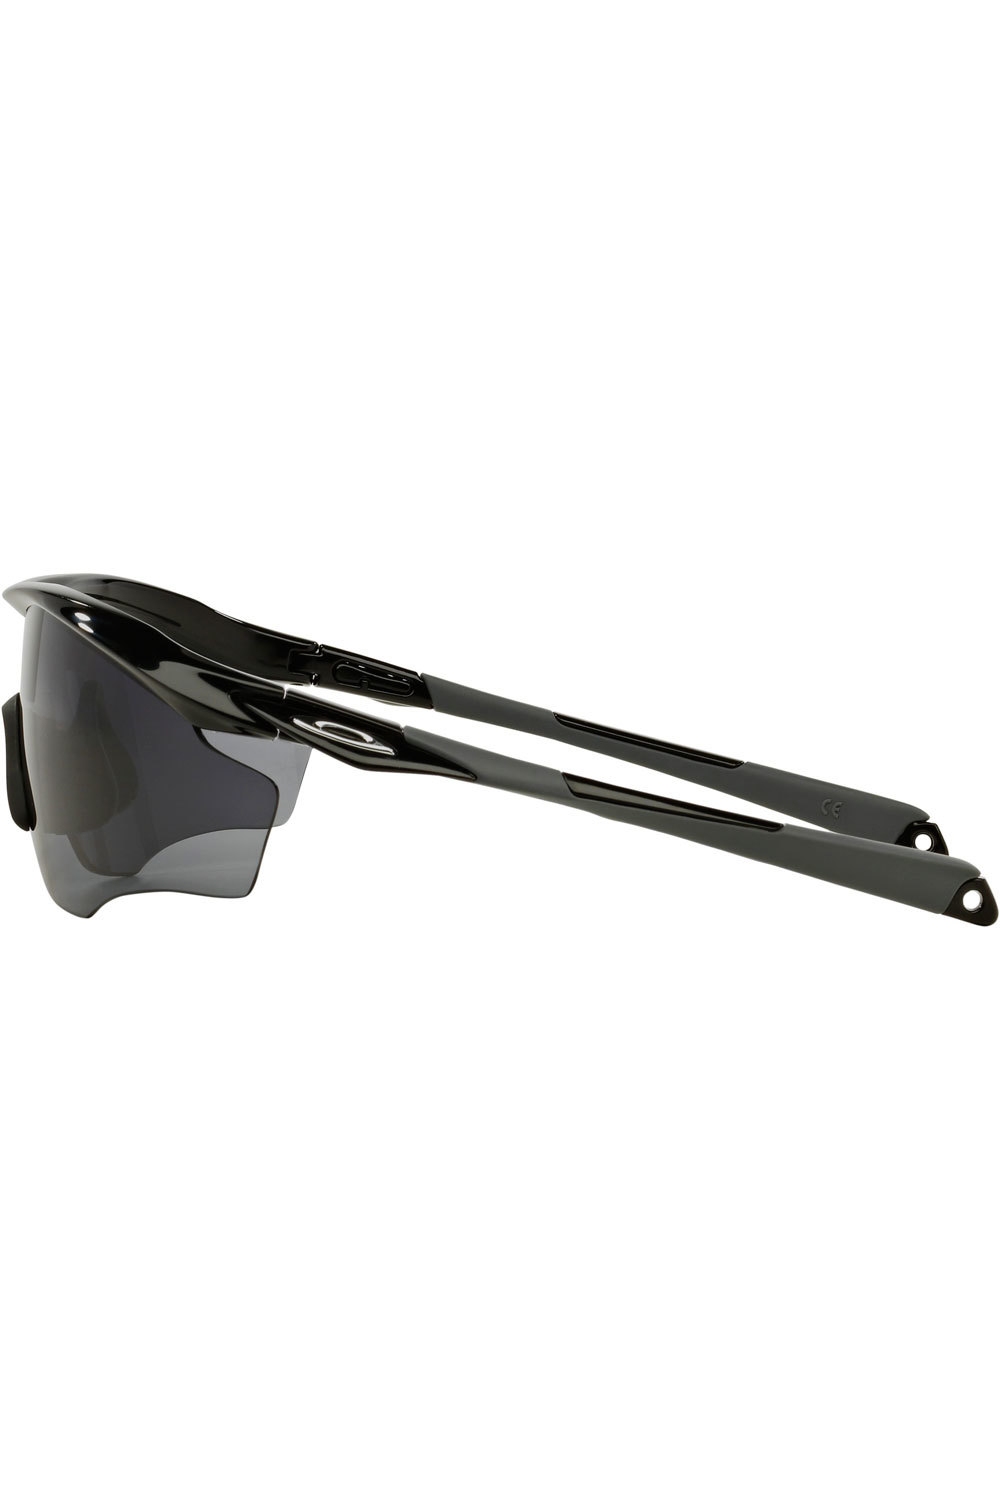 Oakley gafas deportivas M2 FRAME XL POLI BK GREY vista frontal